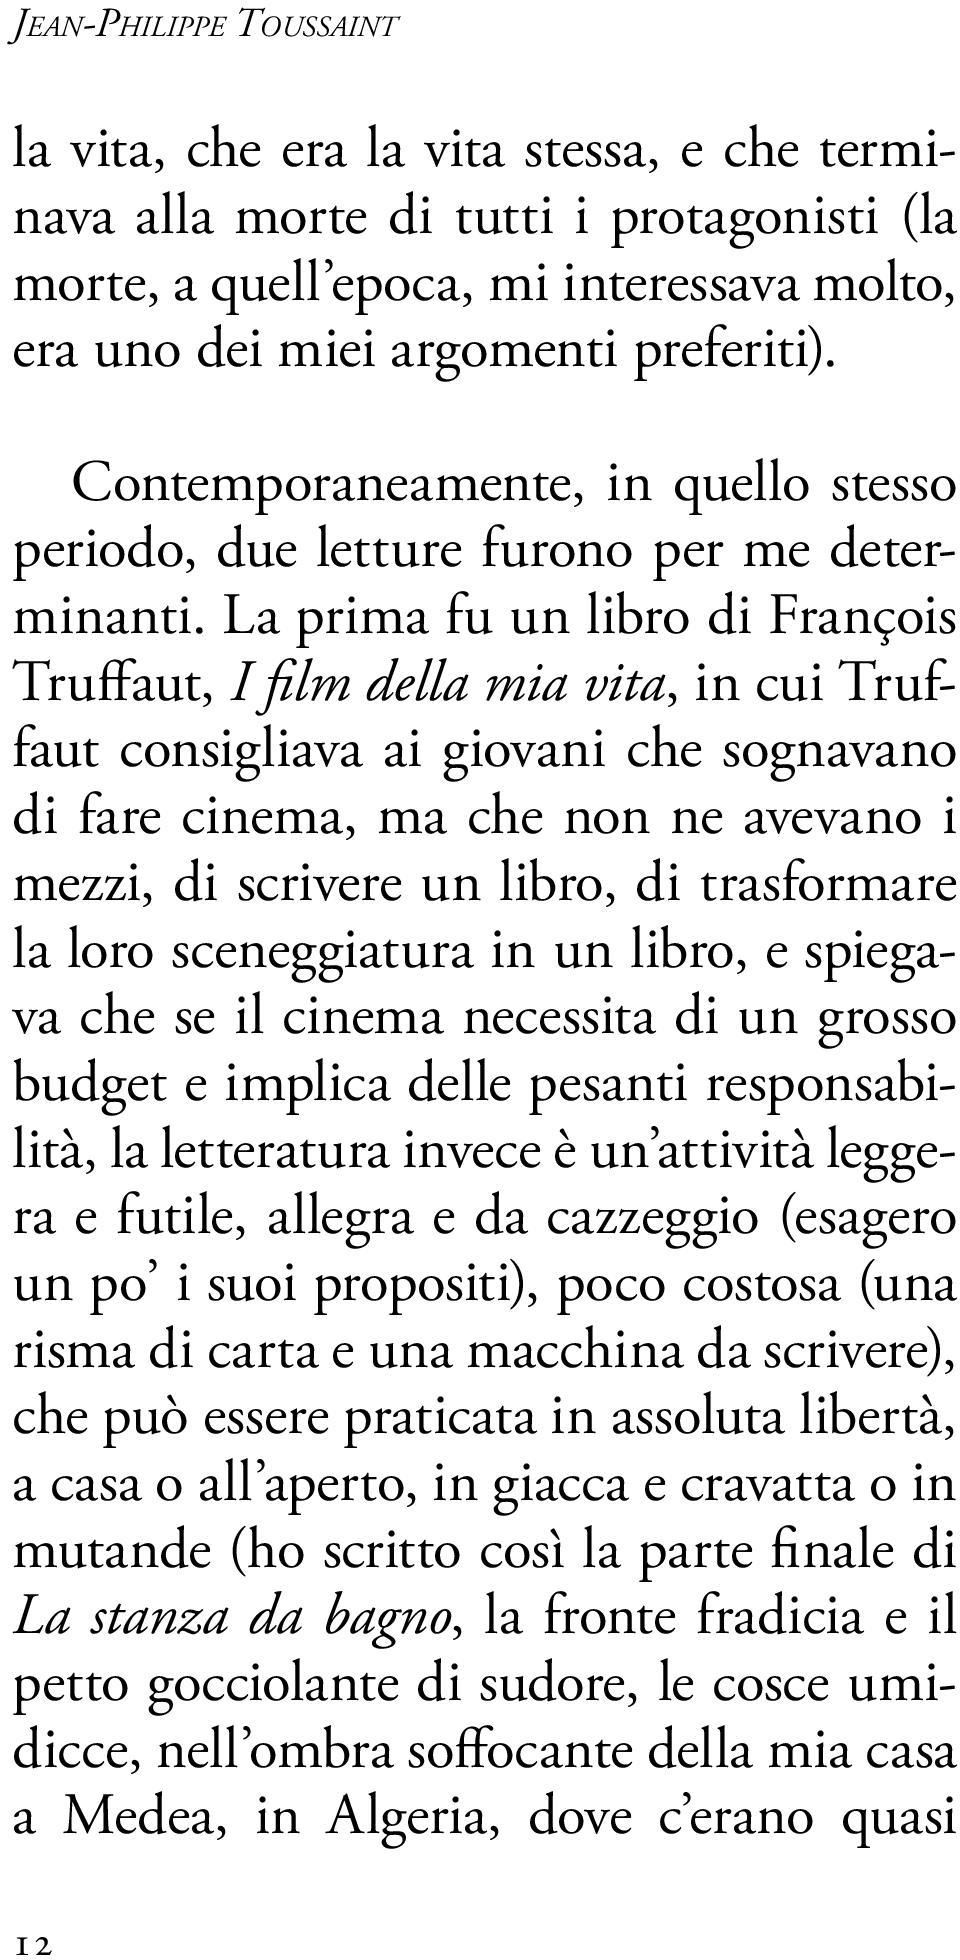 La prima fu un libro di François Truffaut, I film della mia vita, in cui Truffaut consigliava ai giovani che sognavano di fare cinema, ma che non ne avevano i mezzi, di scrivere un libro, di